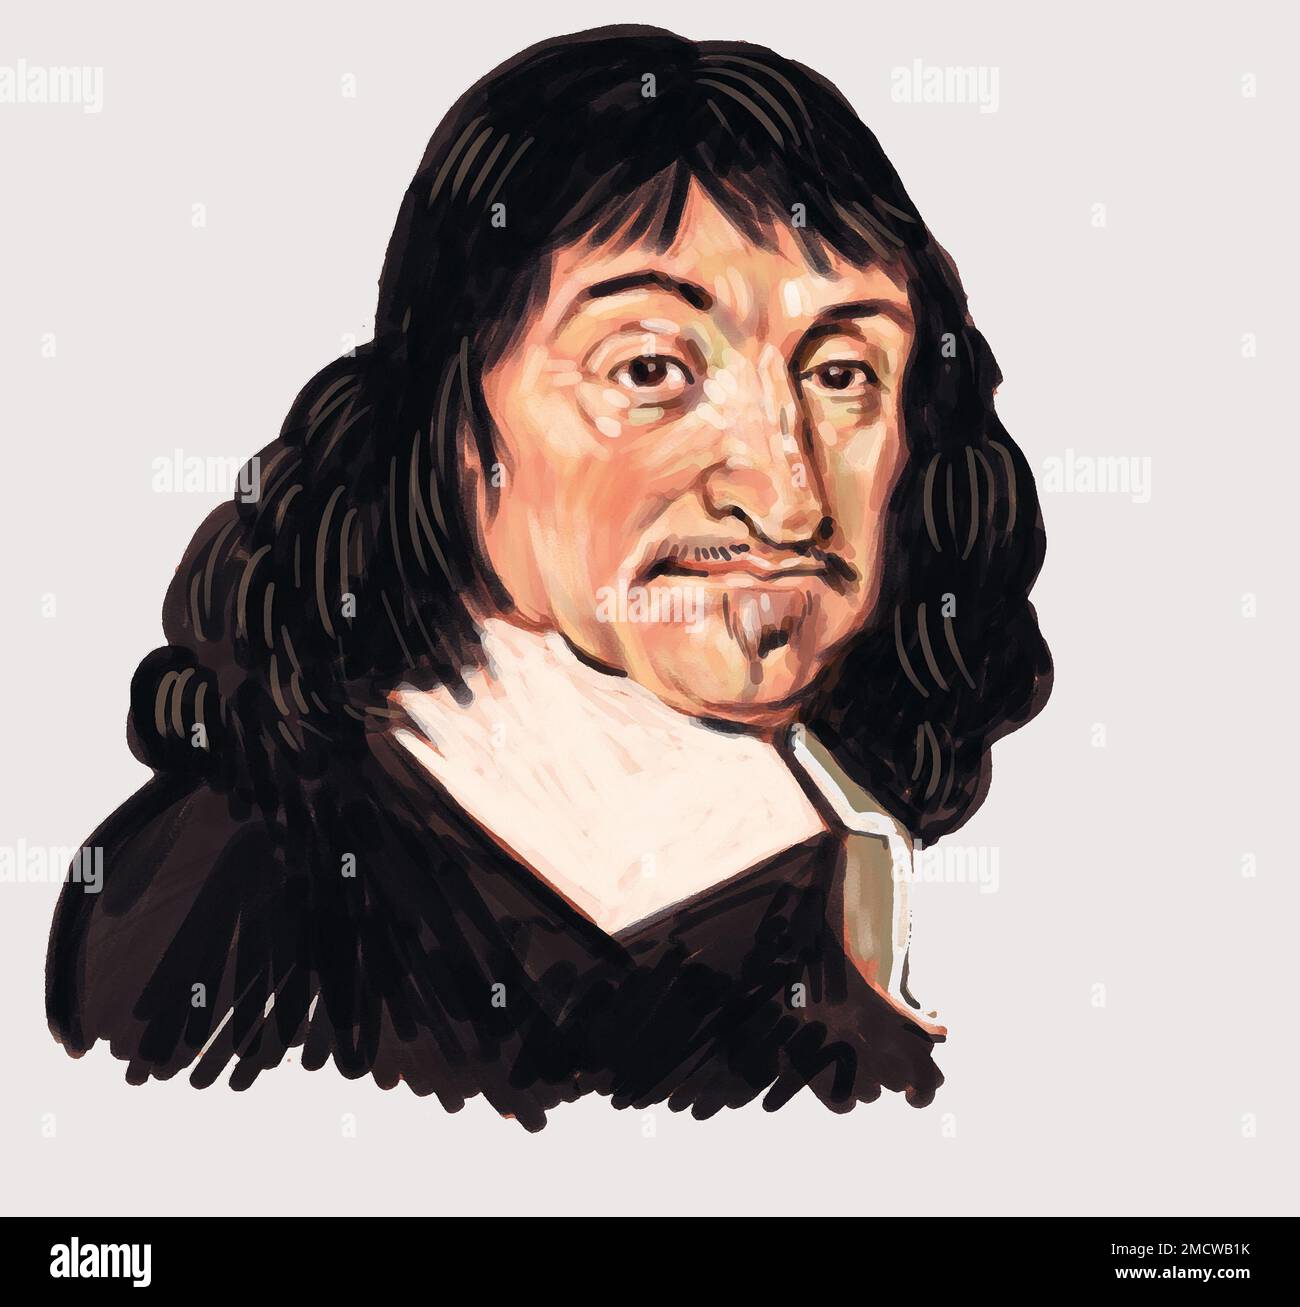 Retrato artístico de René Descartes (Renatus Cartesius) filósofo, científico y matemático francés, una figura seminal en la filosofía y la ciencia modernas. Foto de stock